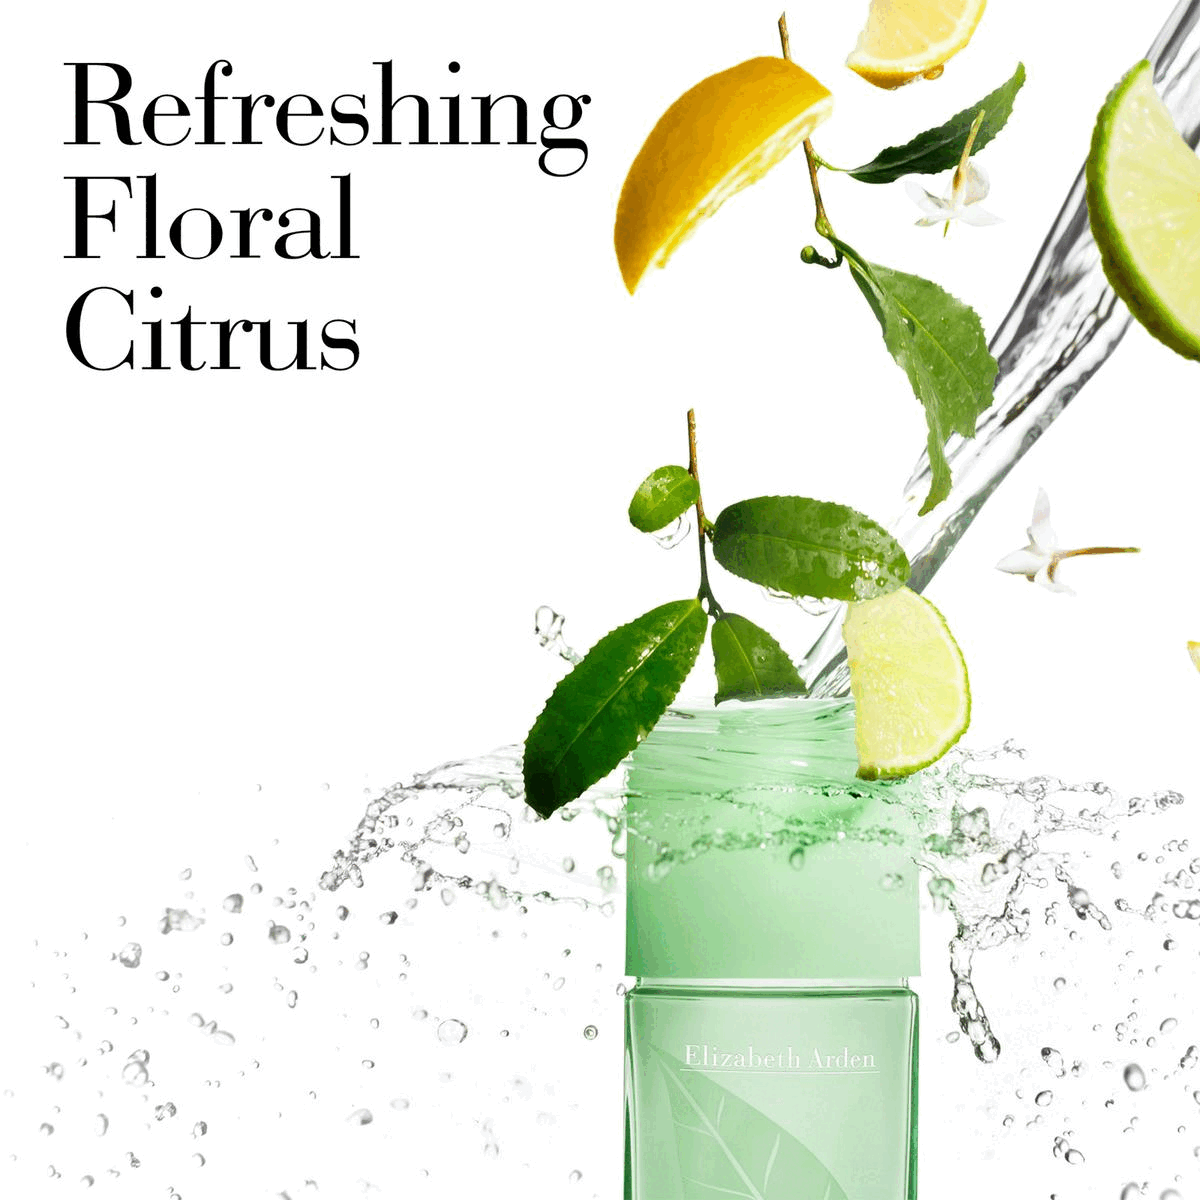 Image 1: Refreshing, floral, Citrus. Image 2: Key Notes: Top, Lemon. Heart, Green Tea. Base, Oakmoss